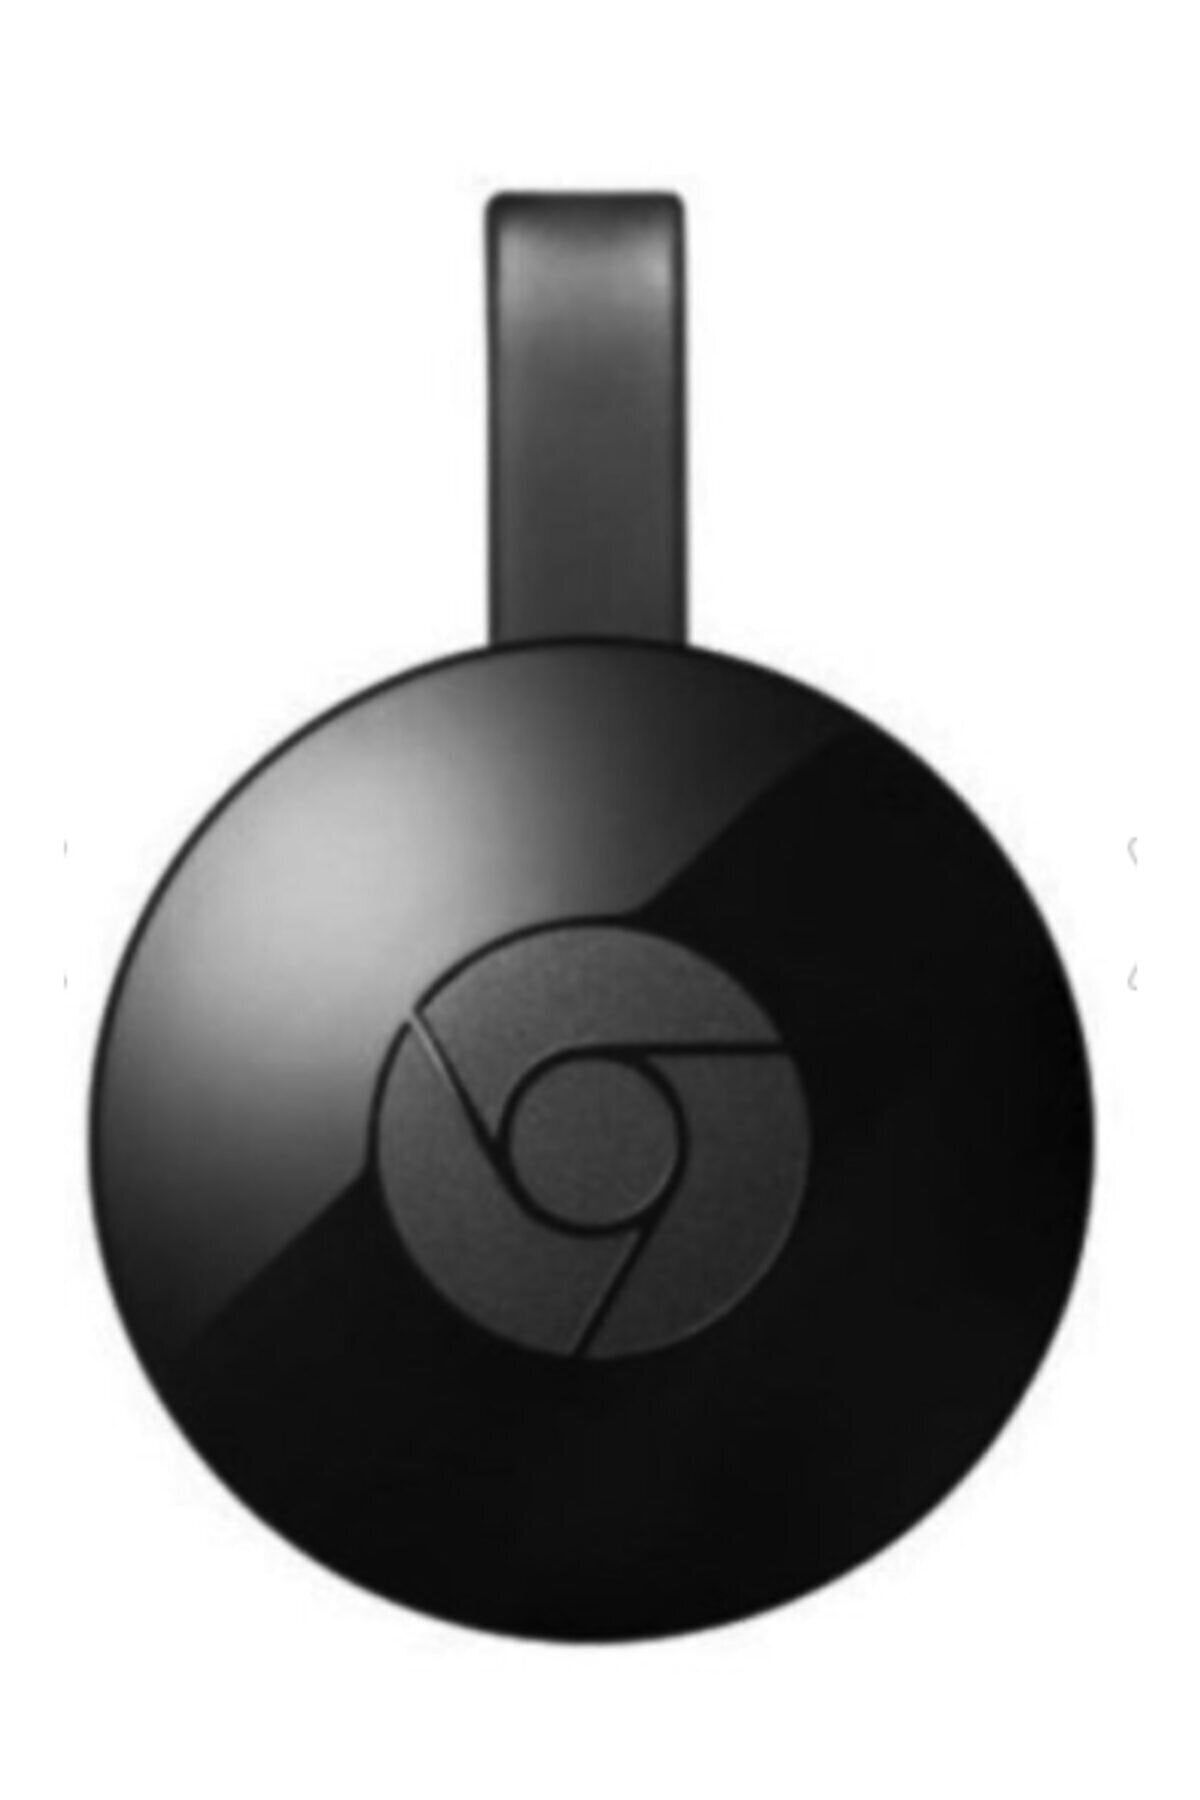 ErdemShop Chromecast 4k Wifi Hdmı Görüntü ve Ses Aktarıcı